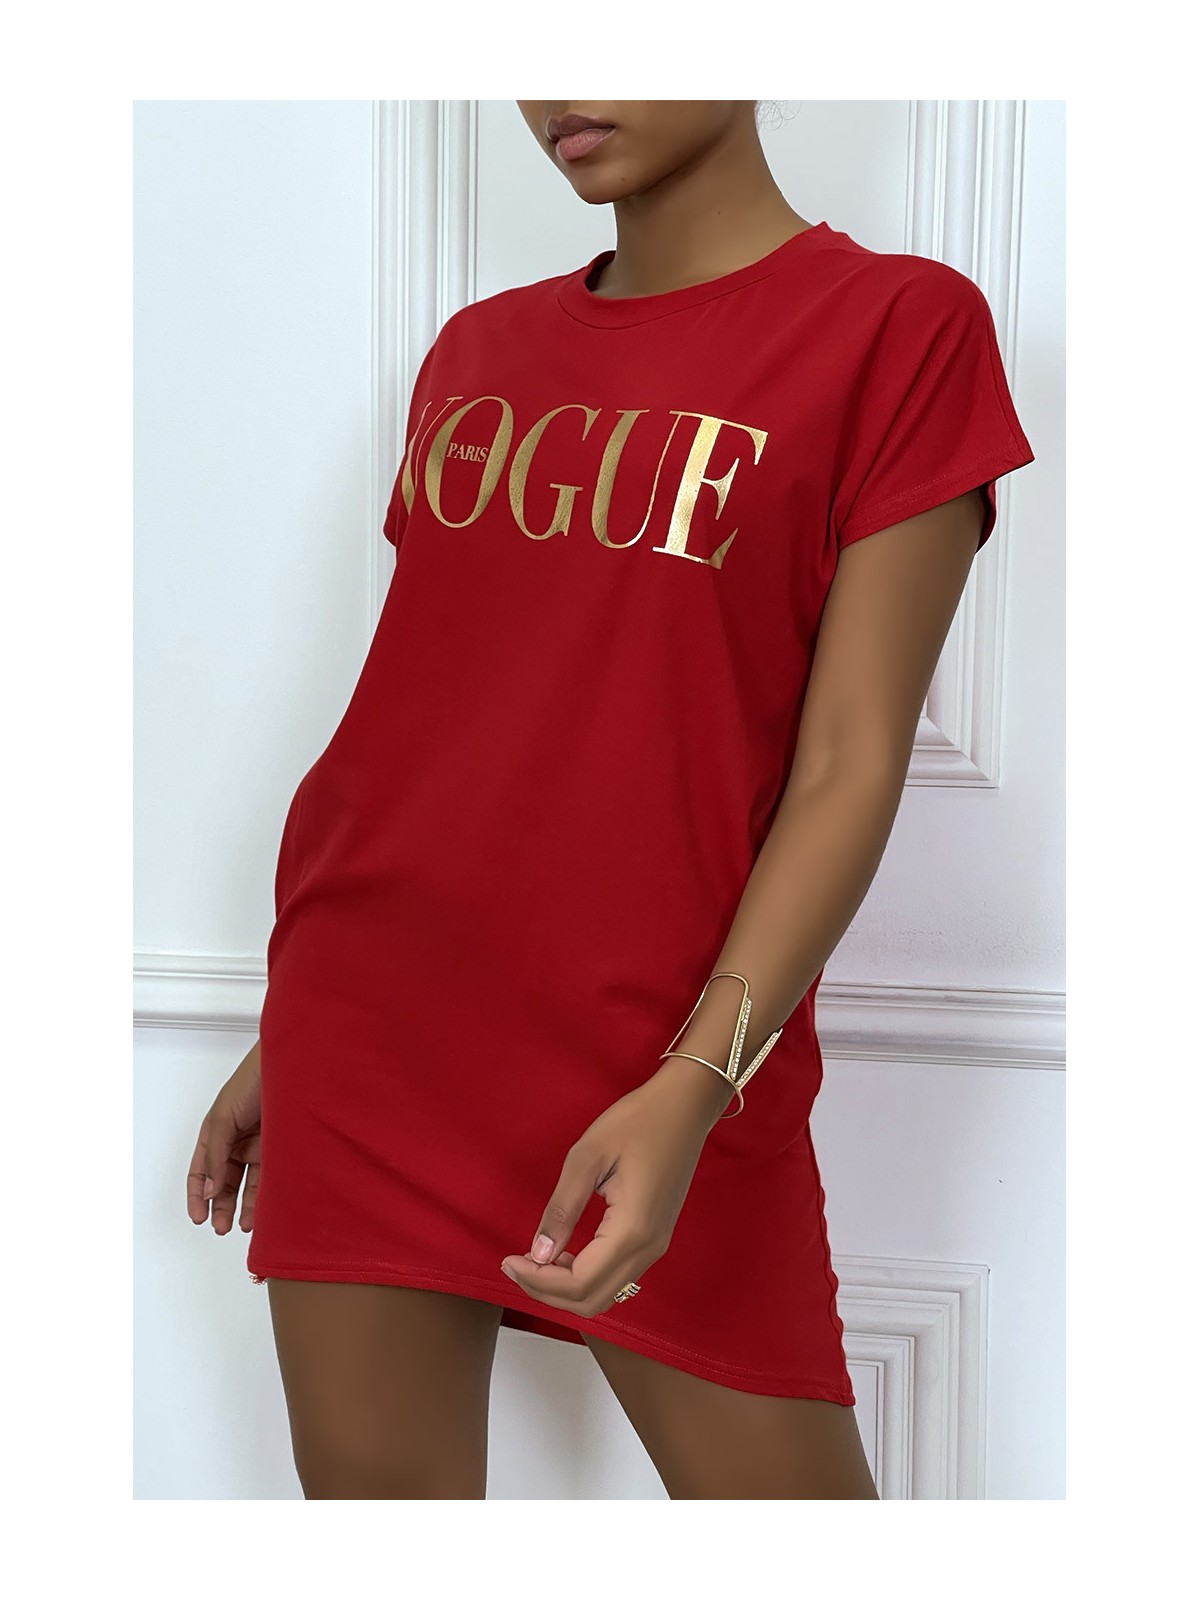 Robe T-shirt "Vogue" rouge à poches - 2